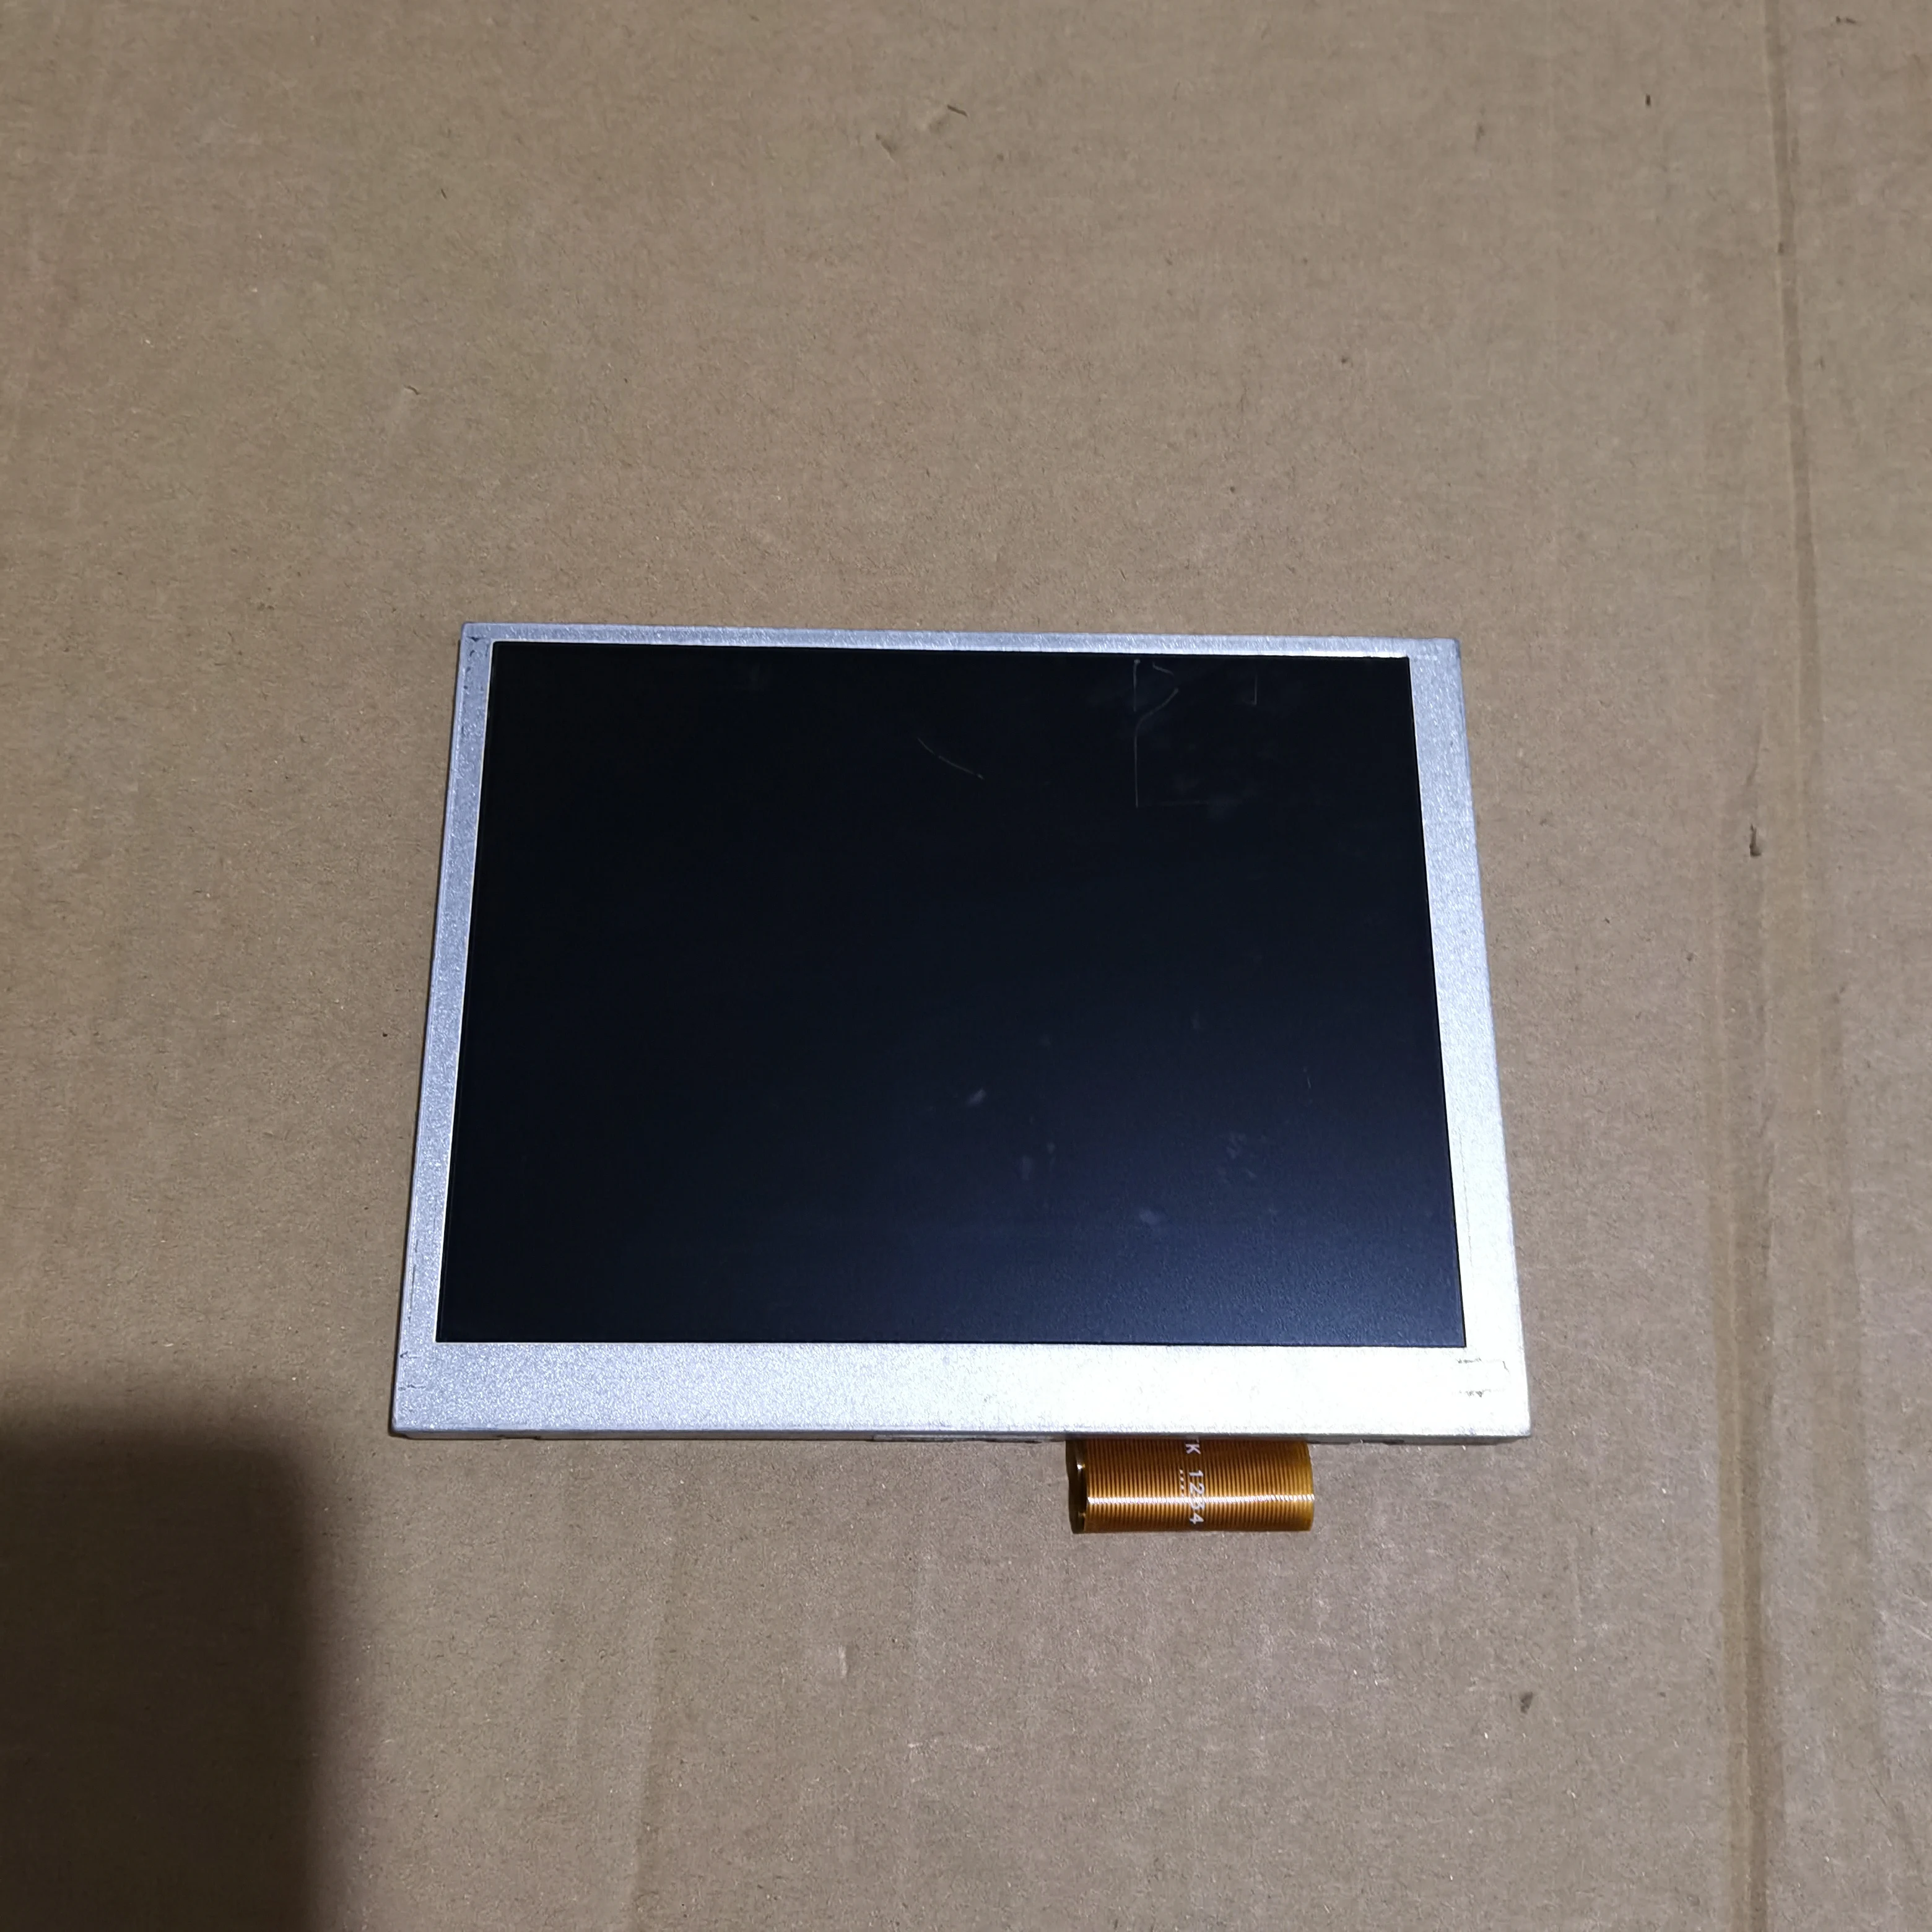 Noi AT056TN52 V. 3 5.6 inch, 640 x 480, Ecran LCD VGA AV LCD Controller Driver Placa - 5